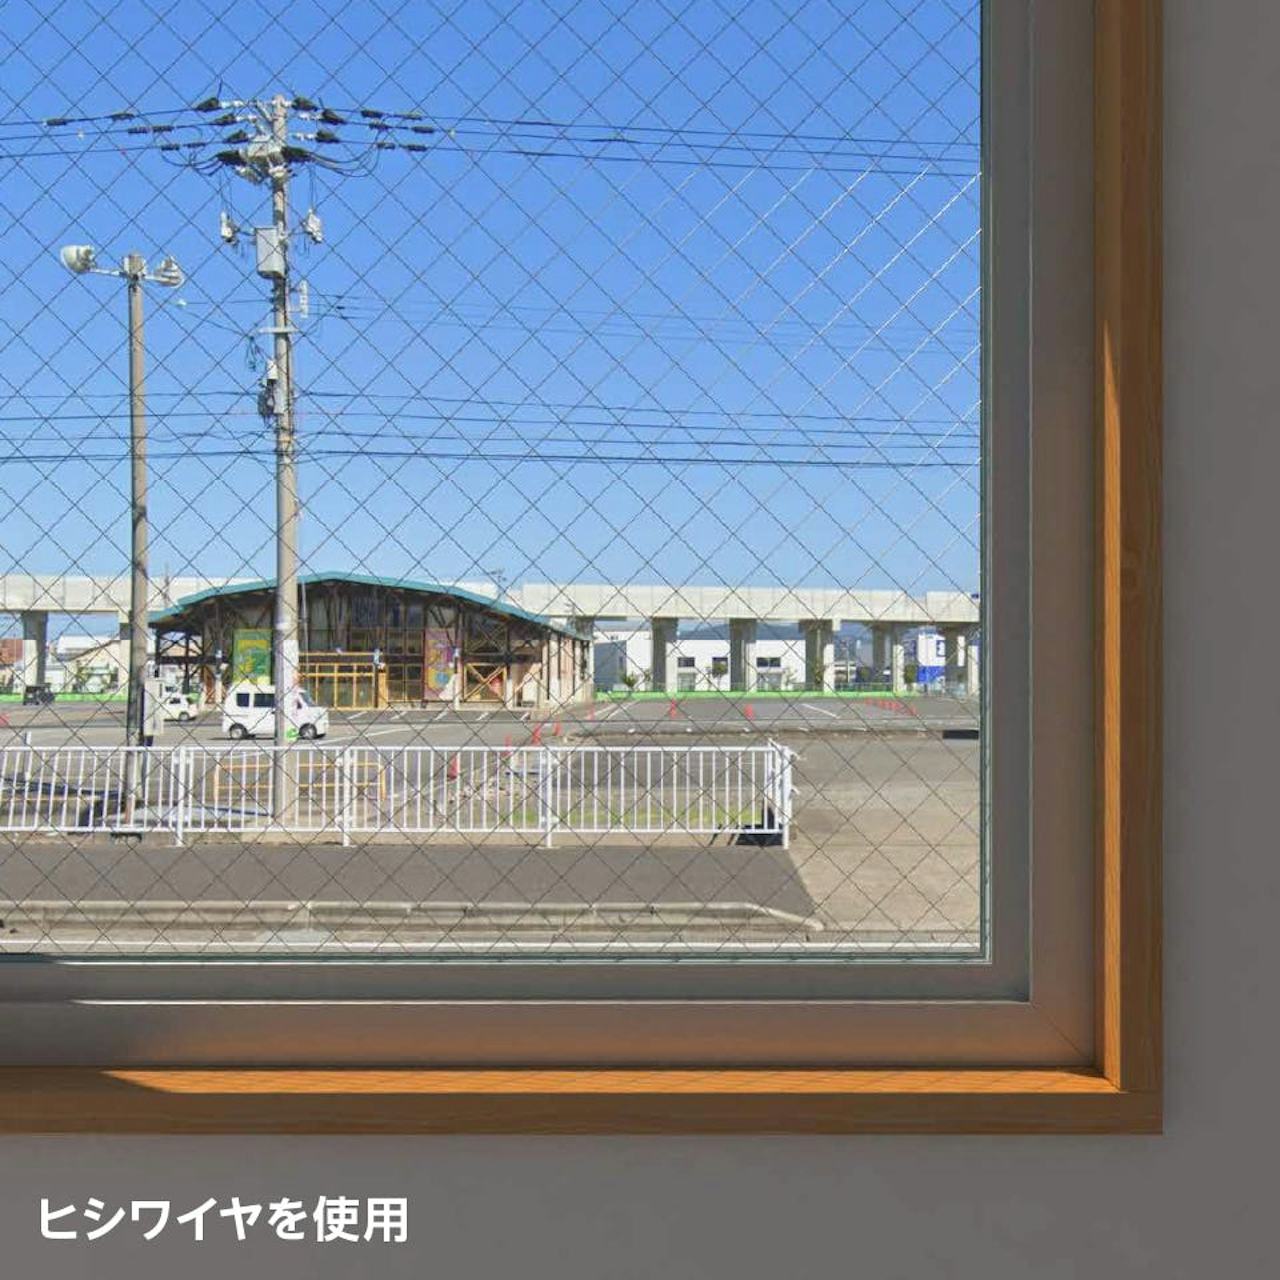 台風・地震対策におすすめの「網入りガラス」を、火災地域の窓に使用した事例